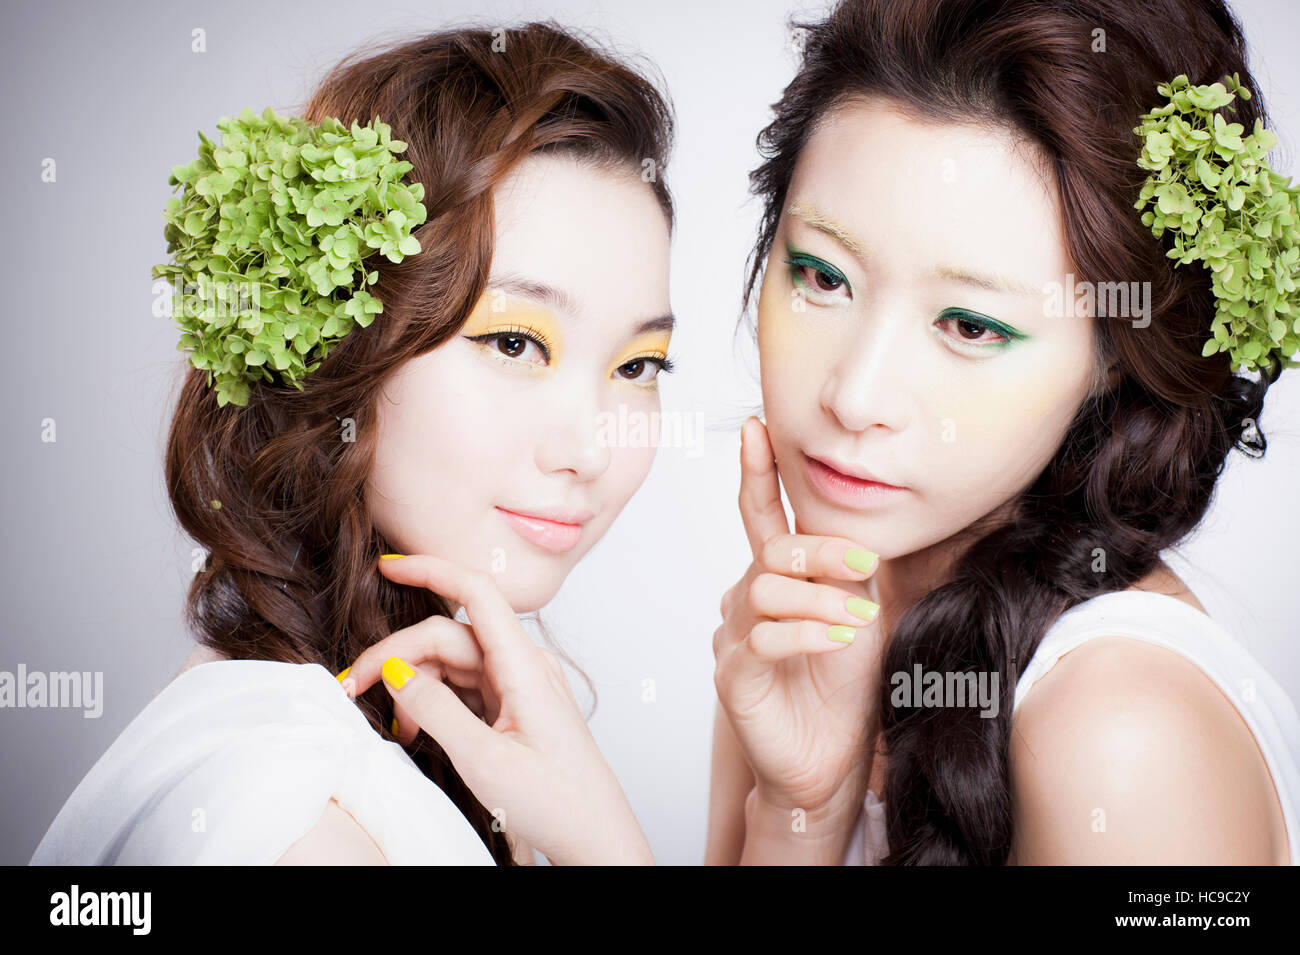 Retrato de dos jóvenes mujeres coreanas con flores de color verde en su largo cabello ondulado posando Foto de stock